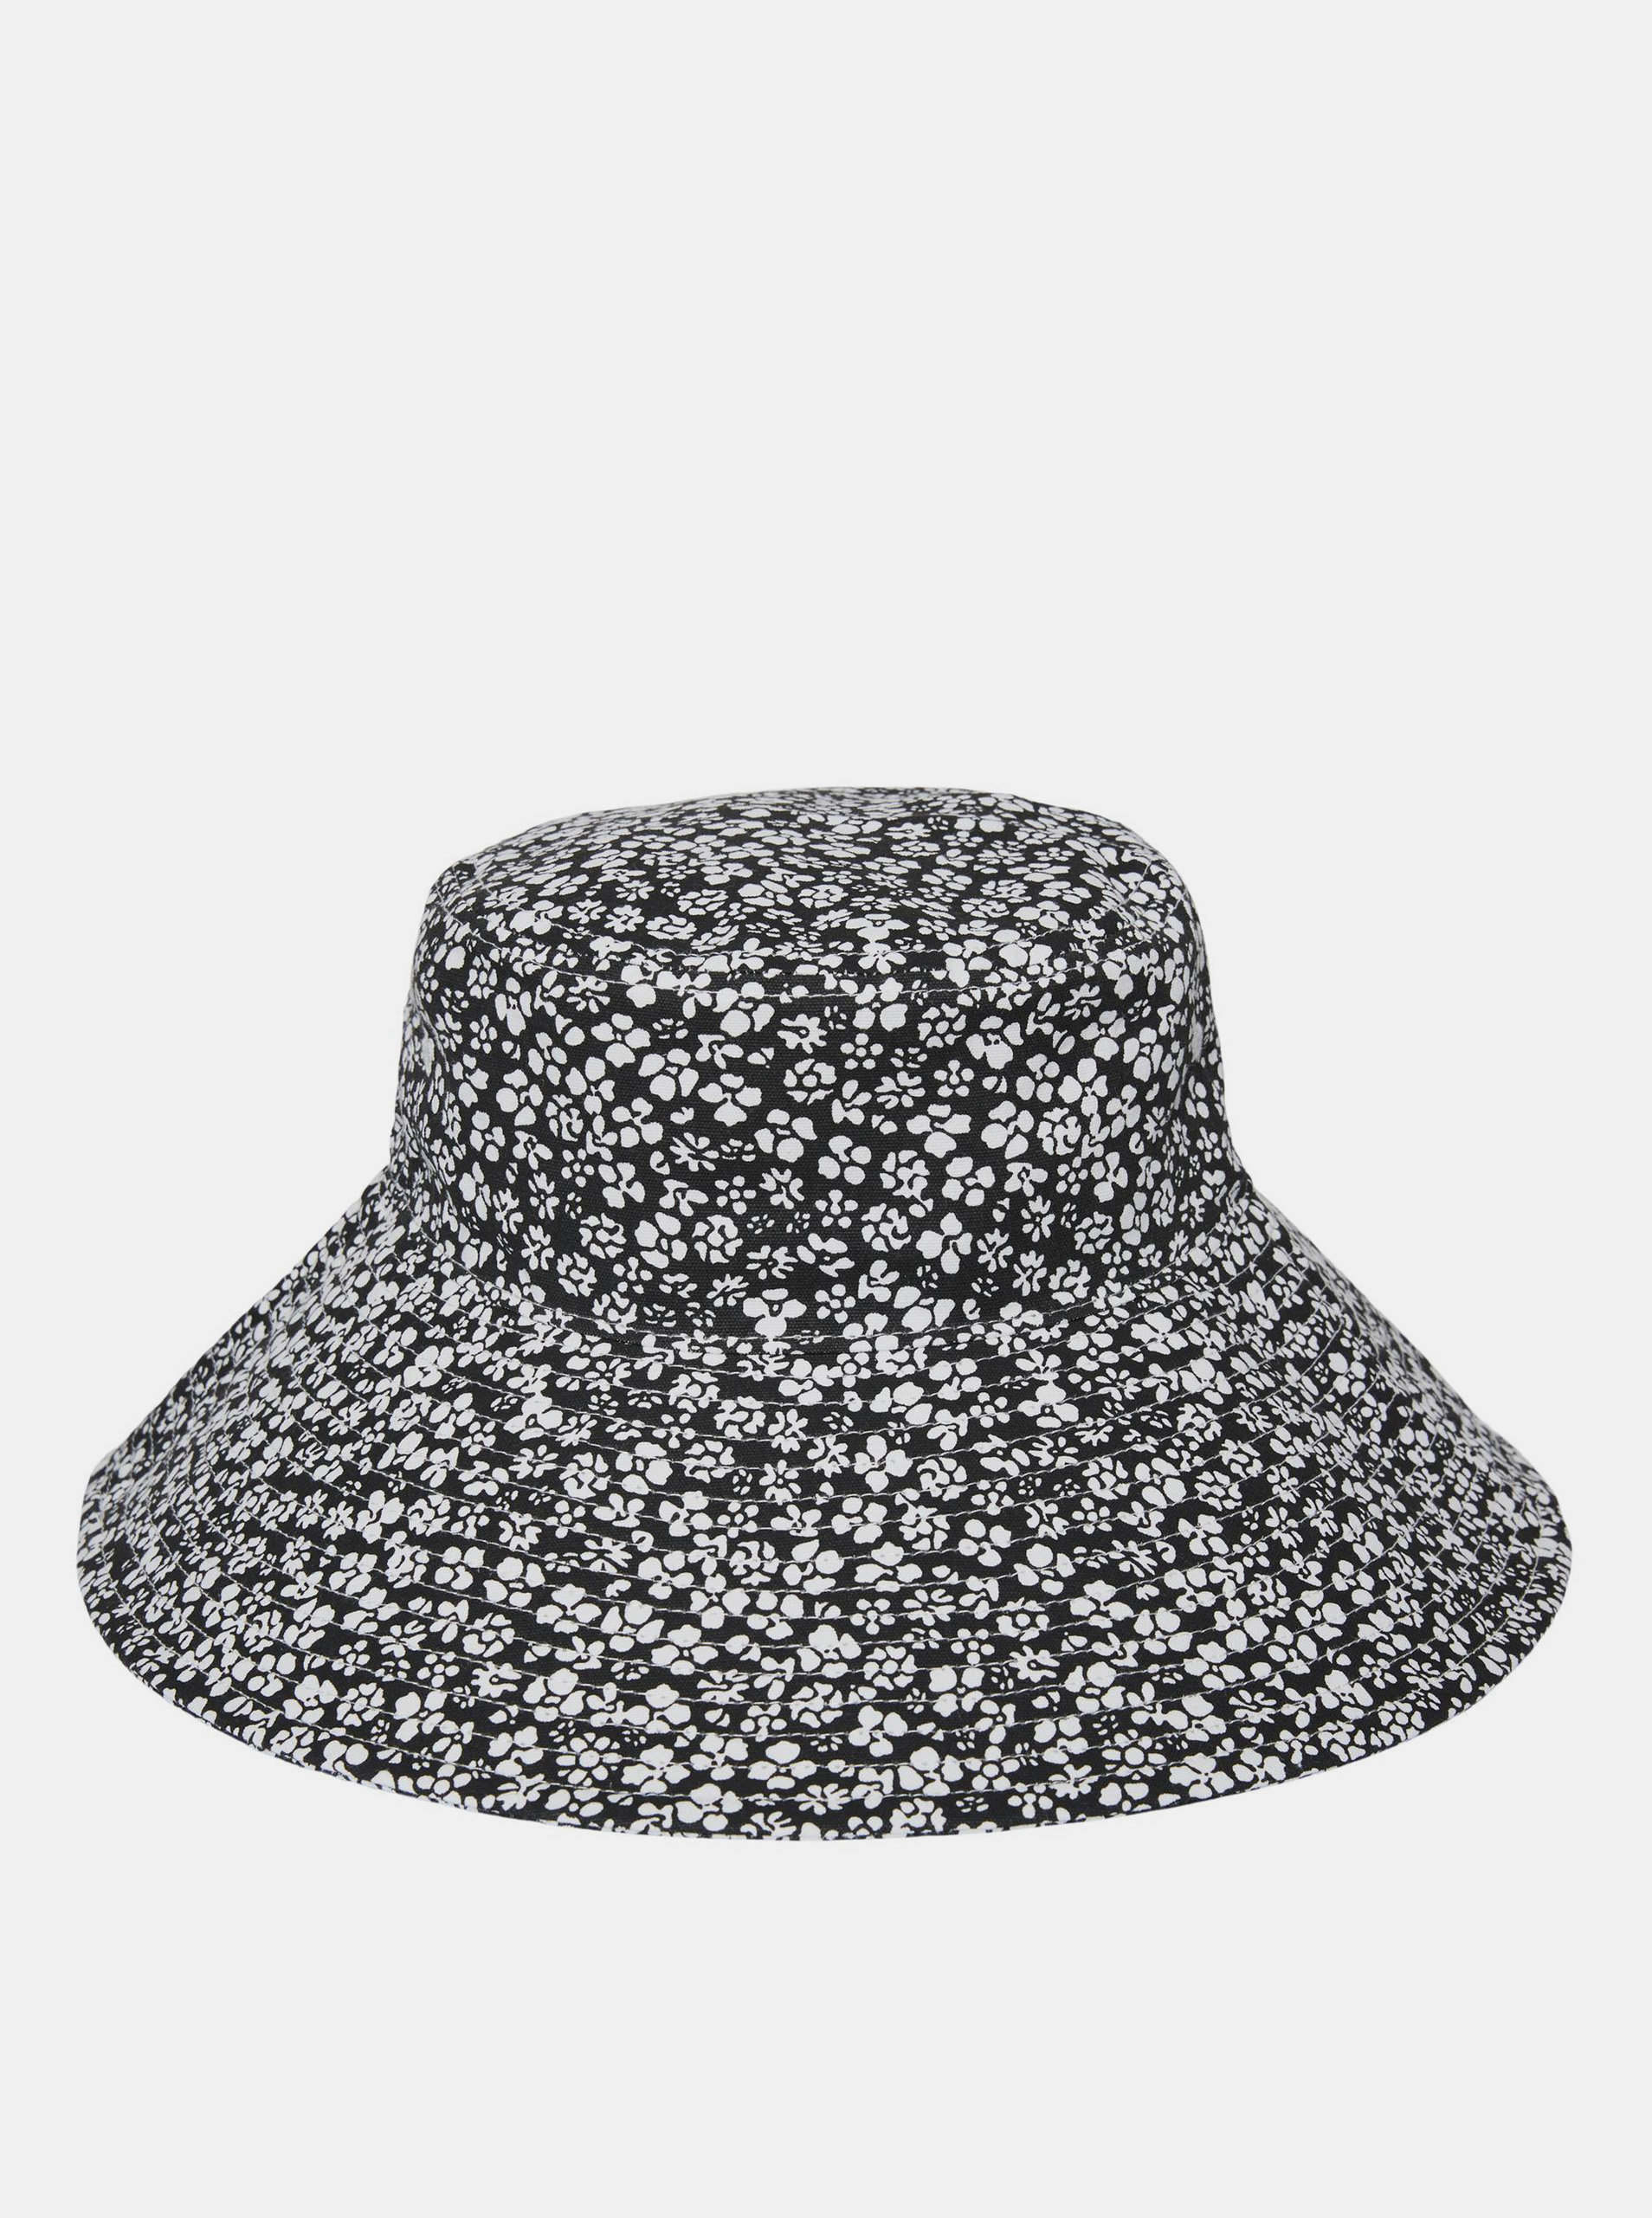 Bílo-černý květovaný klobouk VERO MODA Bella